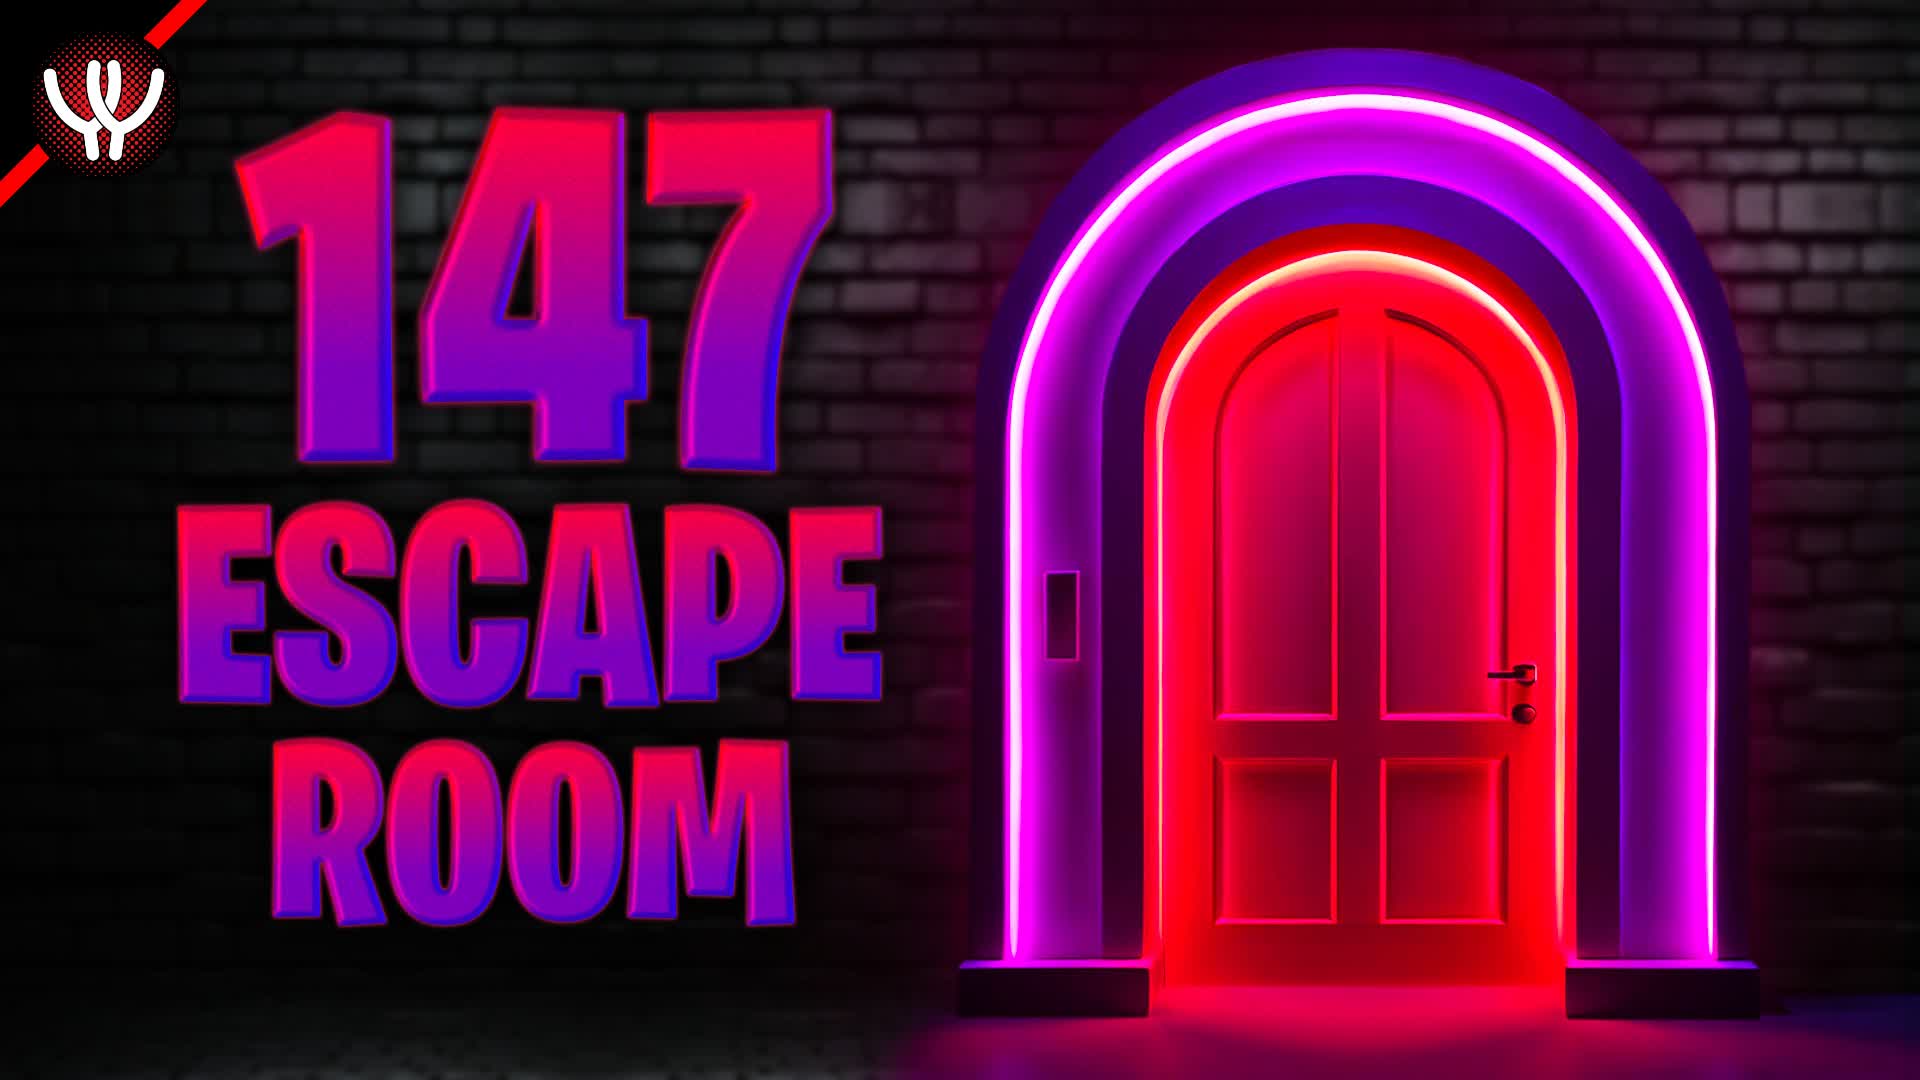 【注目の島】147 Level Escape Room